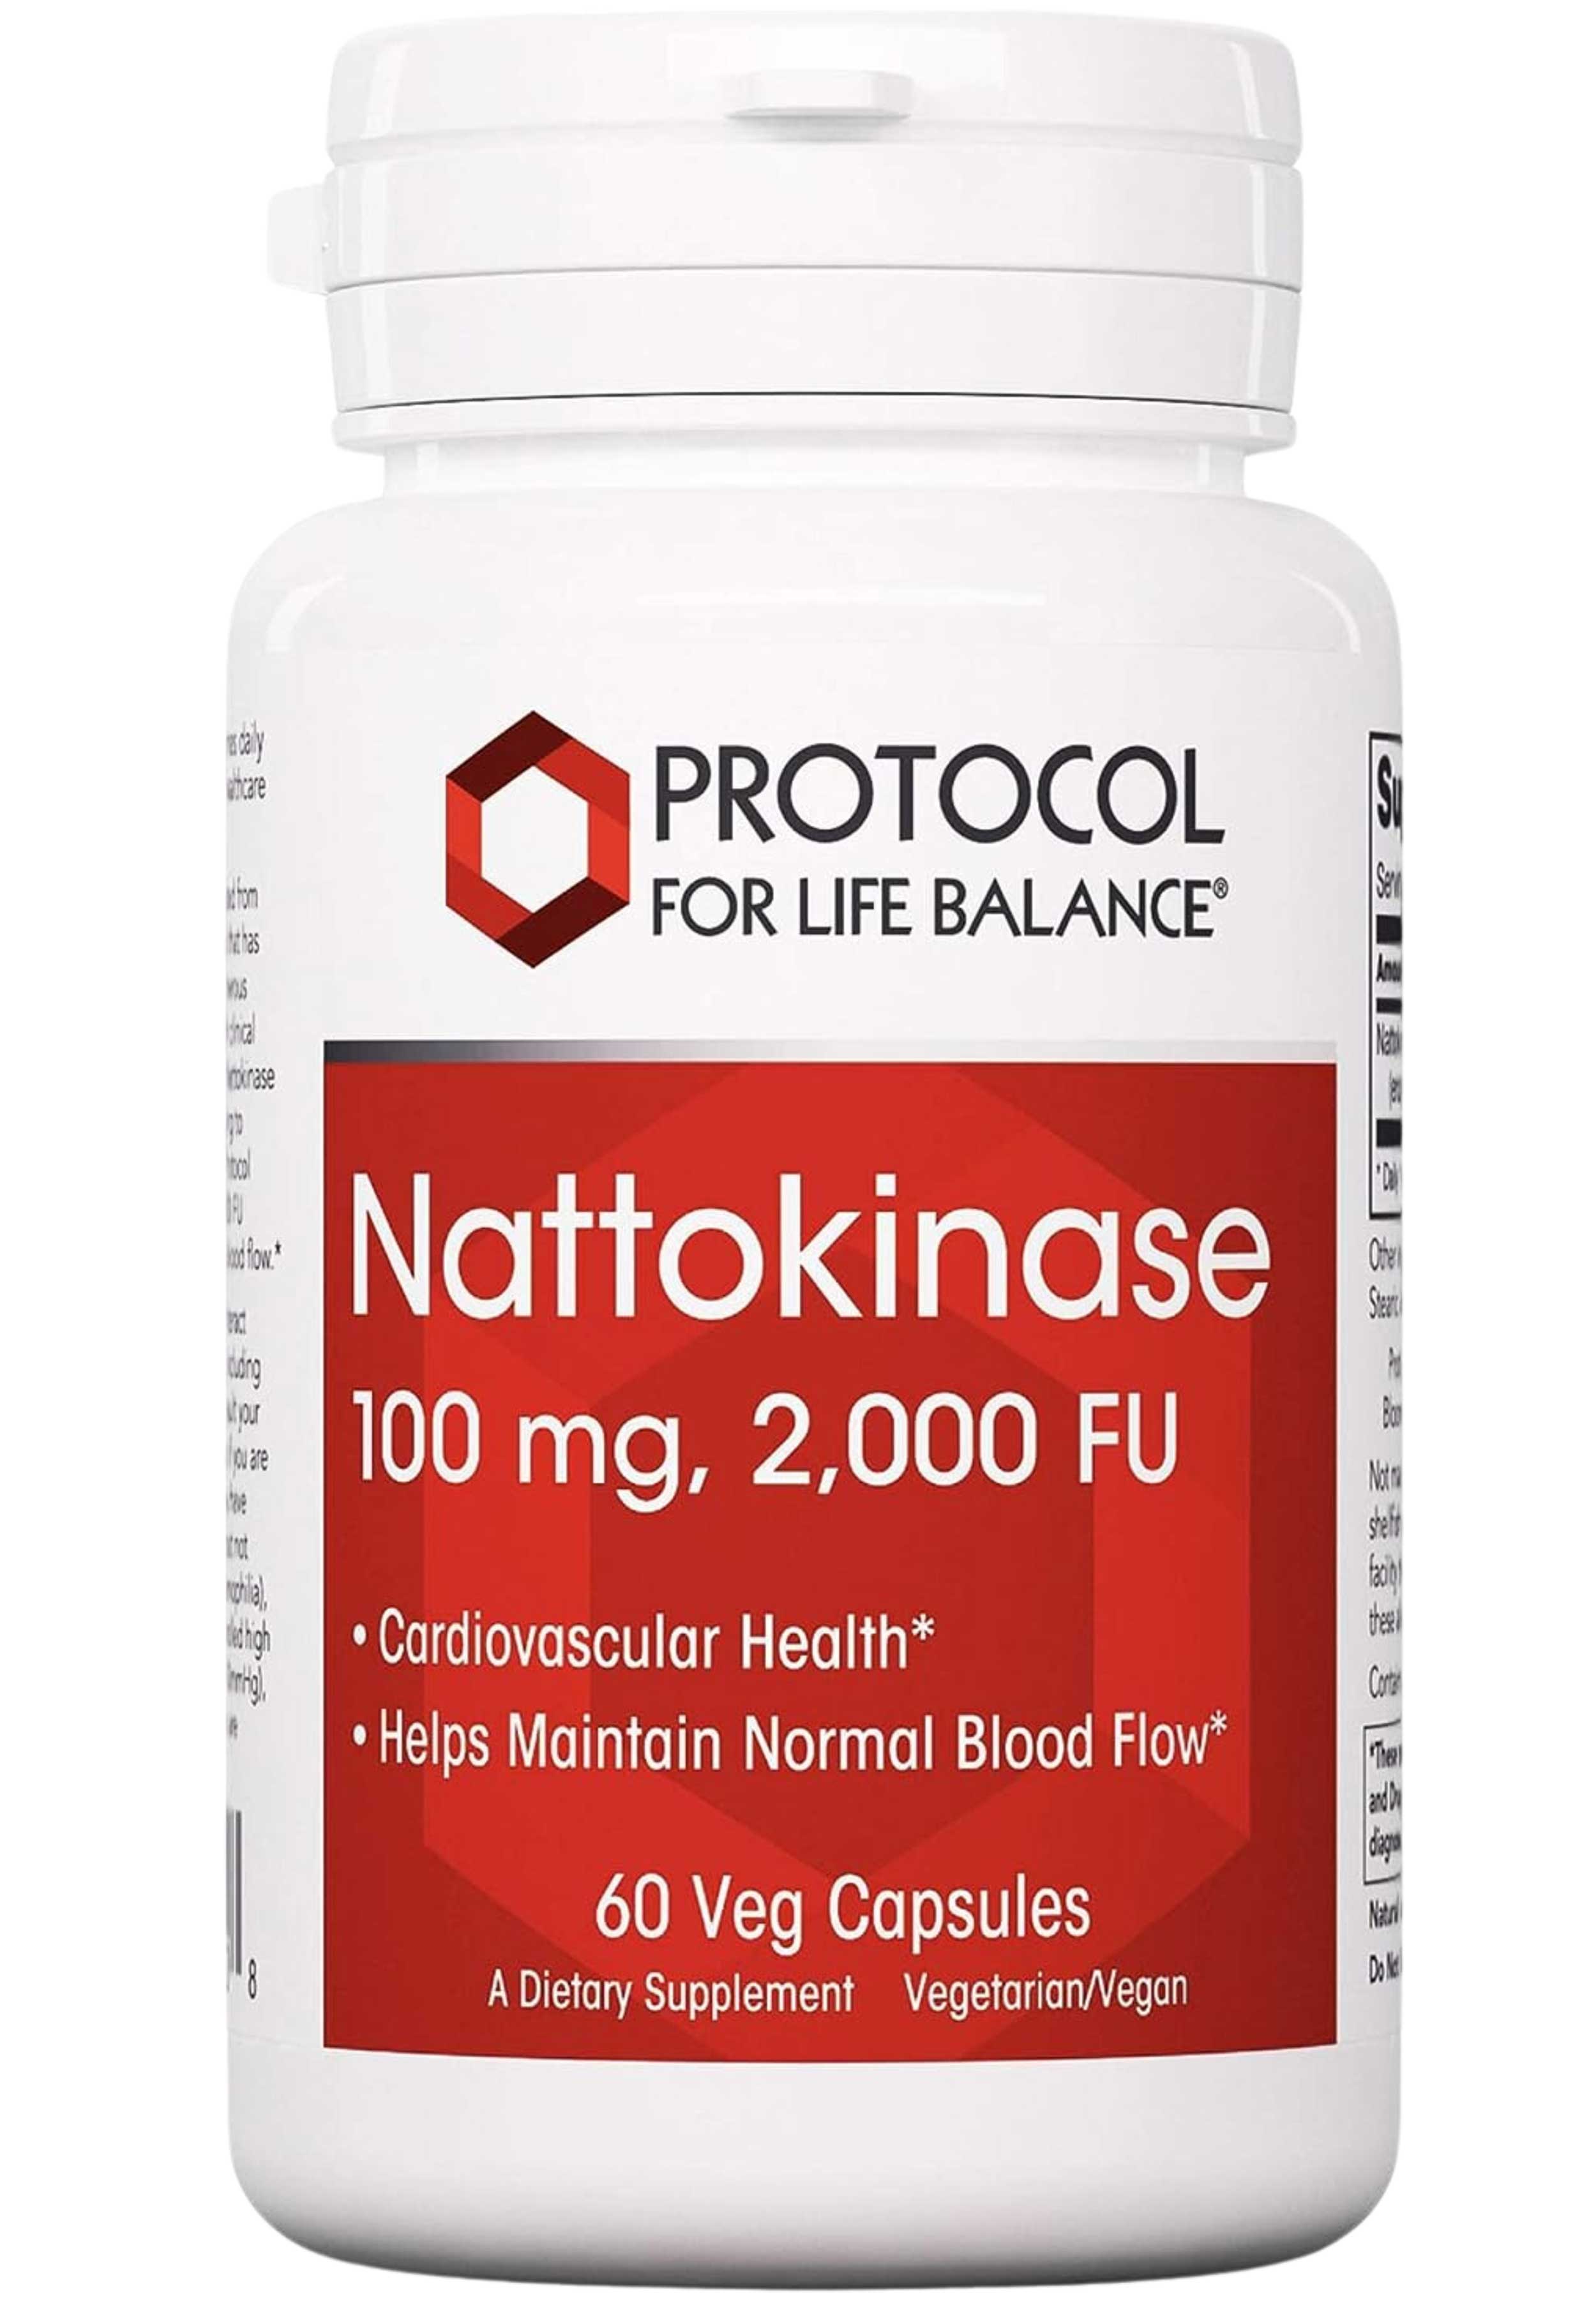 Protocol for Life Balance Nattokinase